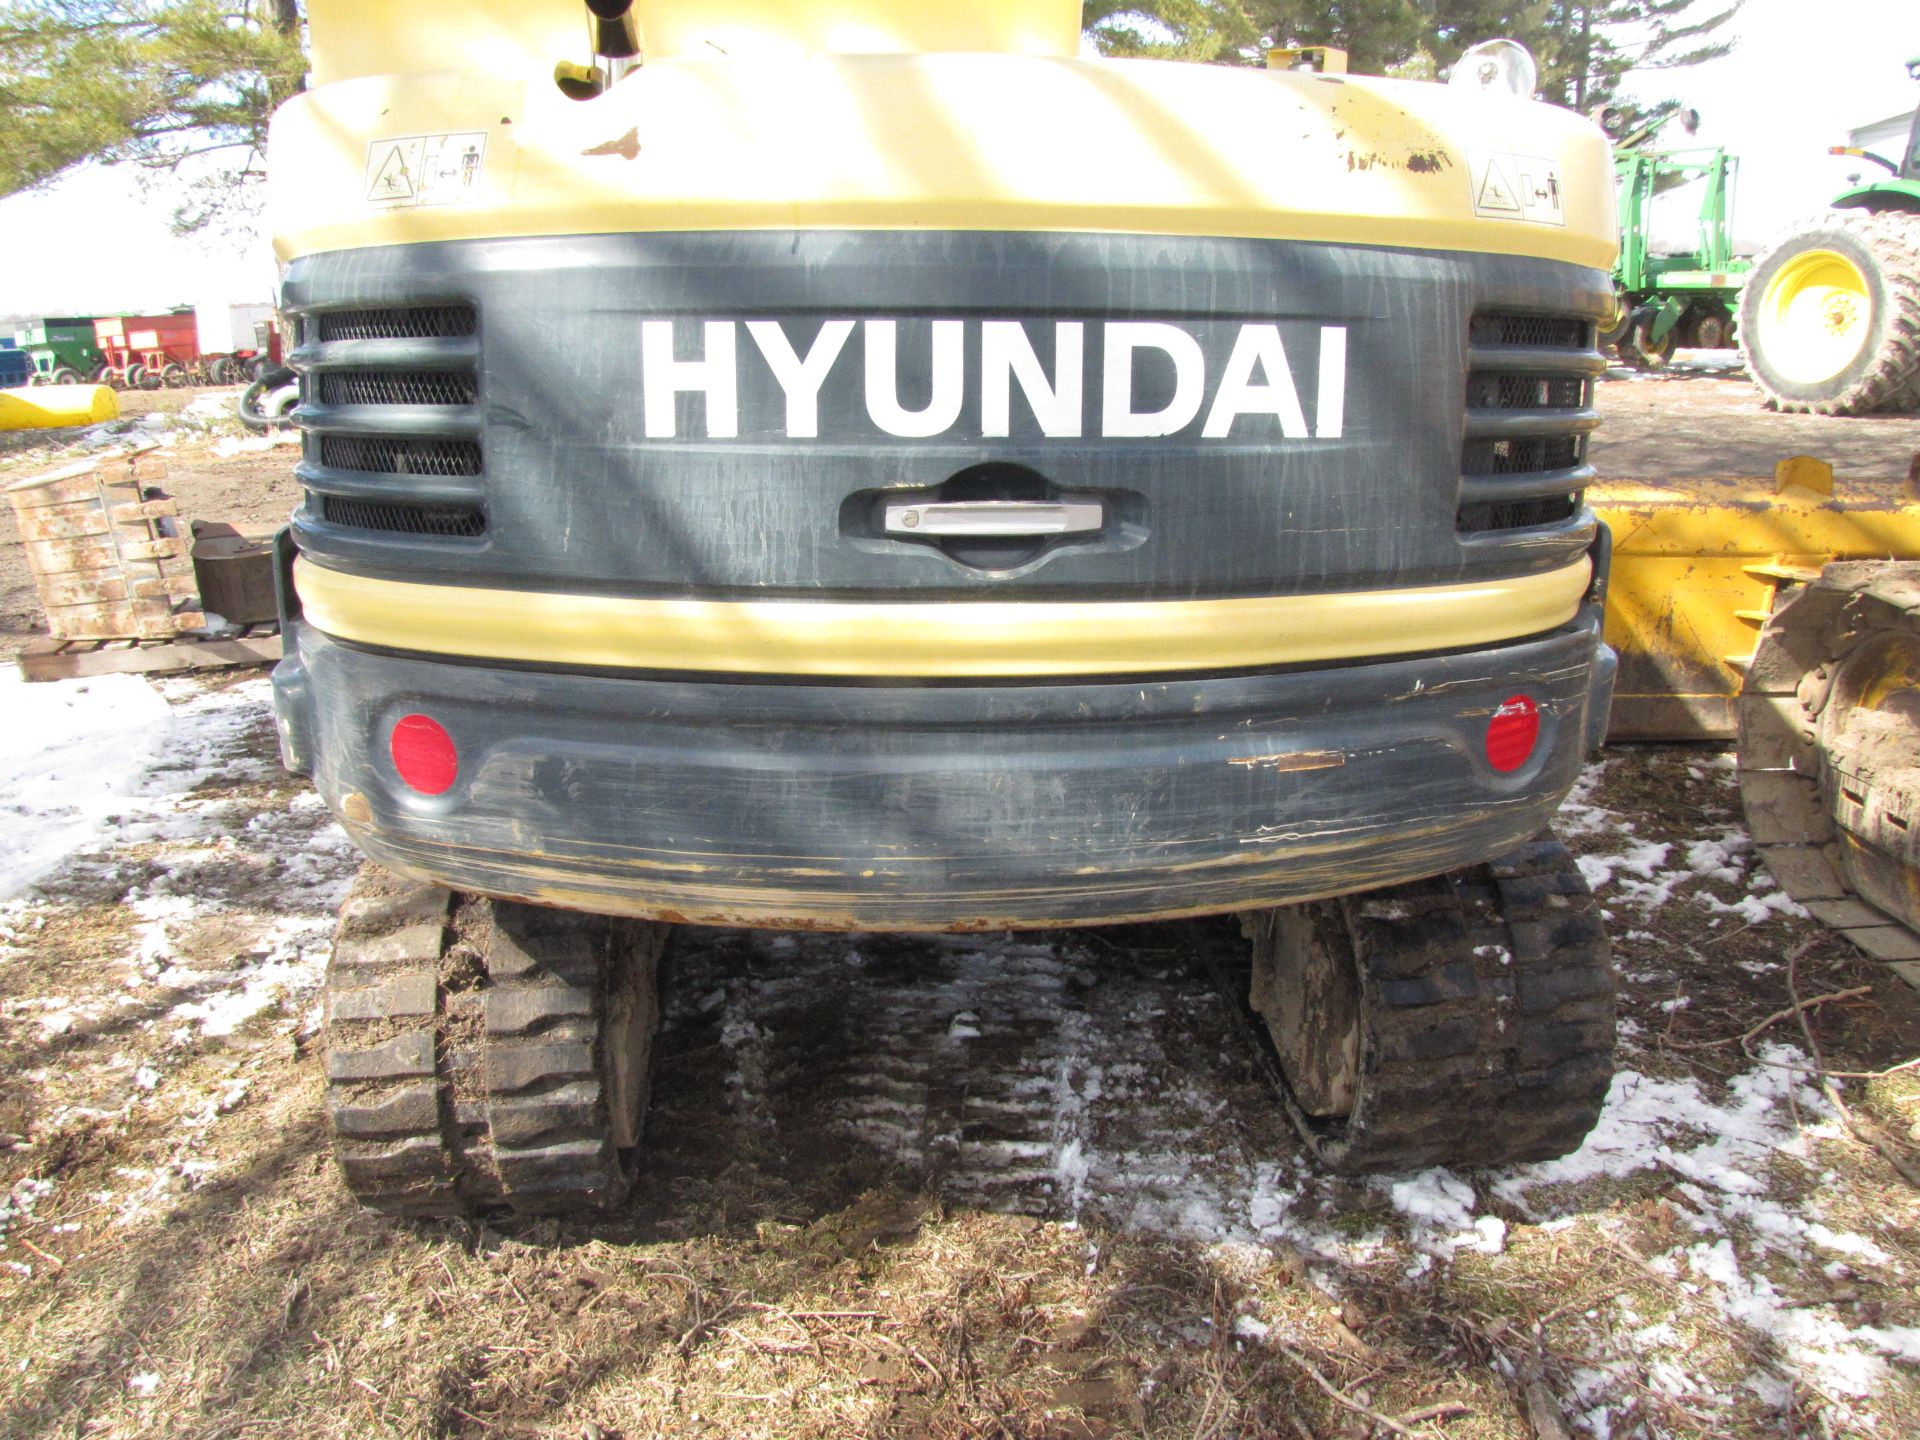 Hyundai 55-9 mini excavator - Image 18 of 42